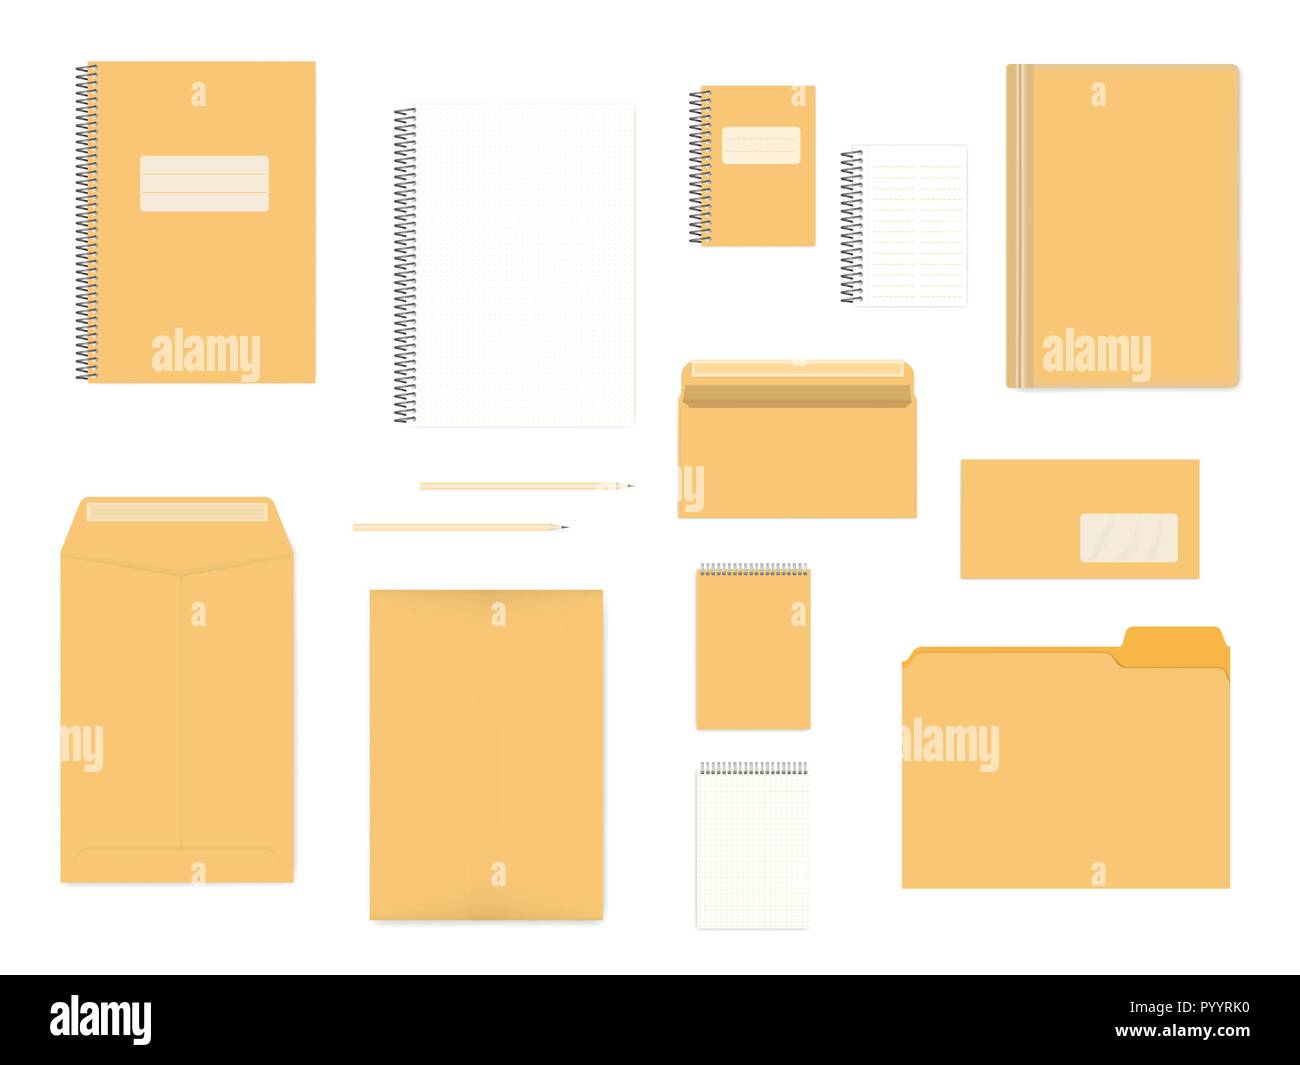 Fournitures de bureau blanc isolé sur fond blanc, des maquettes. A4, A6, DL tailles. L'identité de l'entreprise modèle de produits Illustration de Vecteur